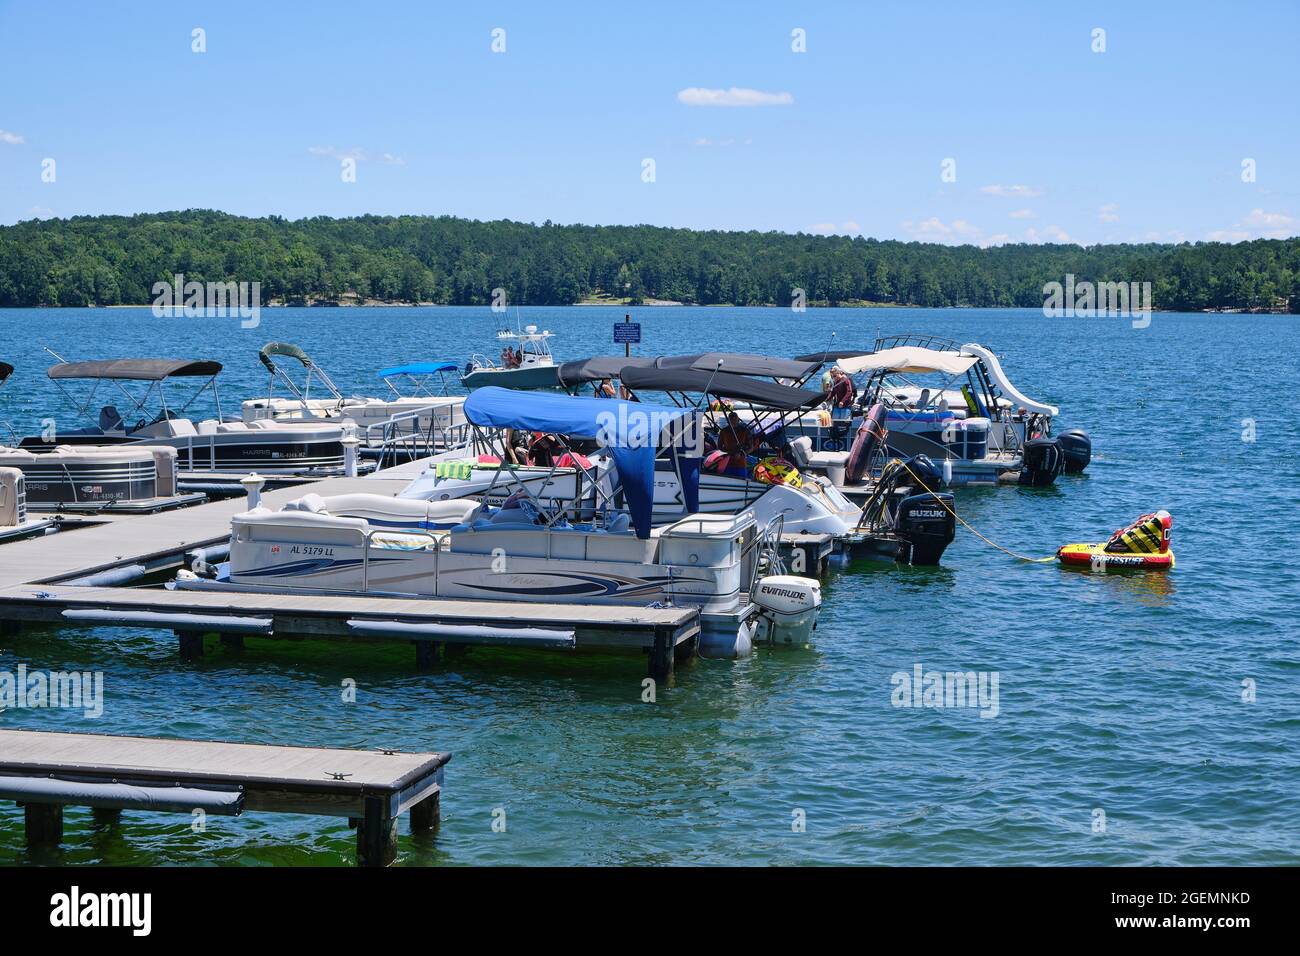 Attracchi e barche con barche legate al ristorante Kowaliga sul lago Martin, Alabama USA. Foto Stock